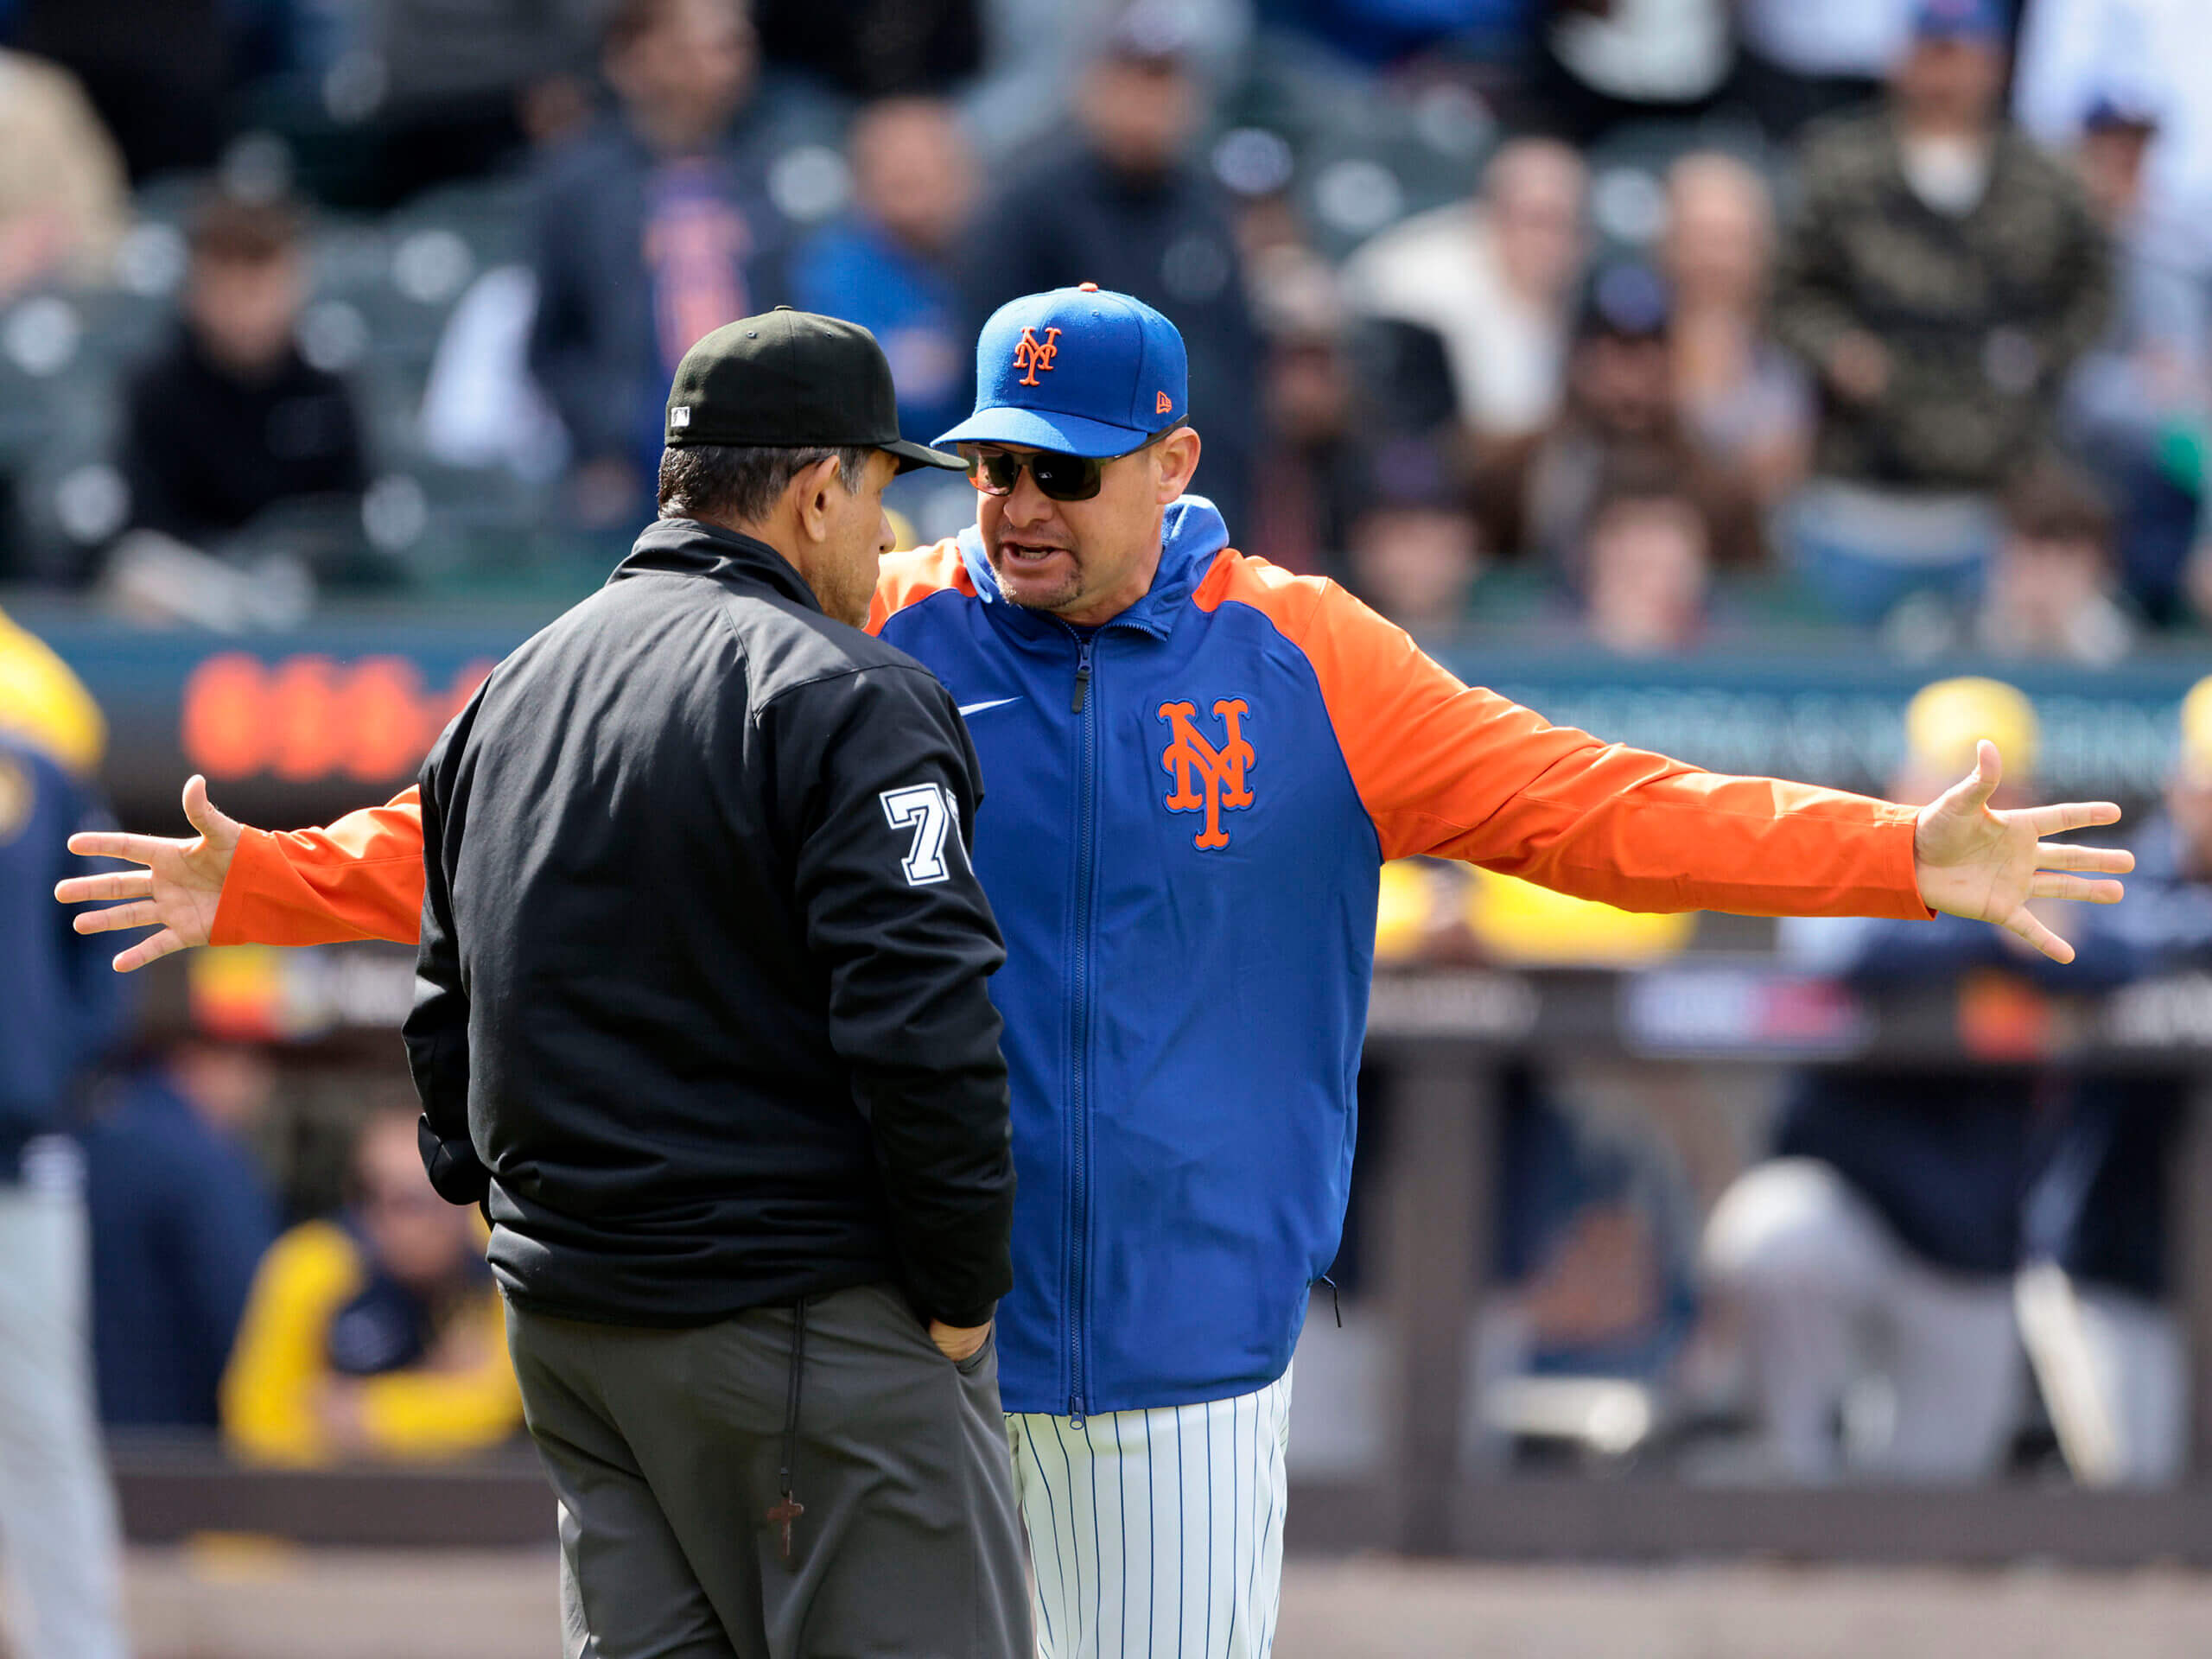 El jardinero de los Mets, Johan Ramírez, fue suspendido 3 juegos por lanzar intencionalmente un juego a Hoskins y Carlos Mendoza.